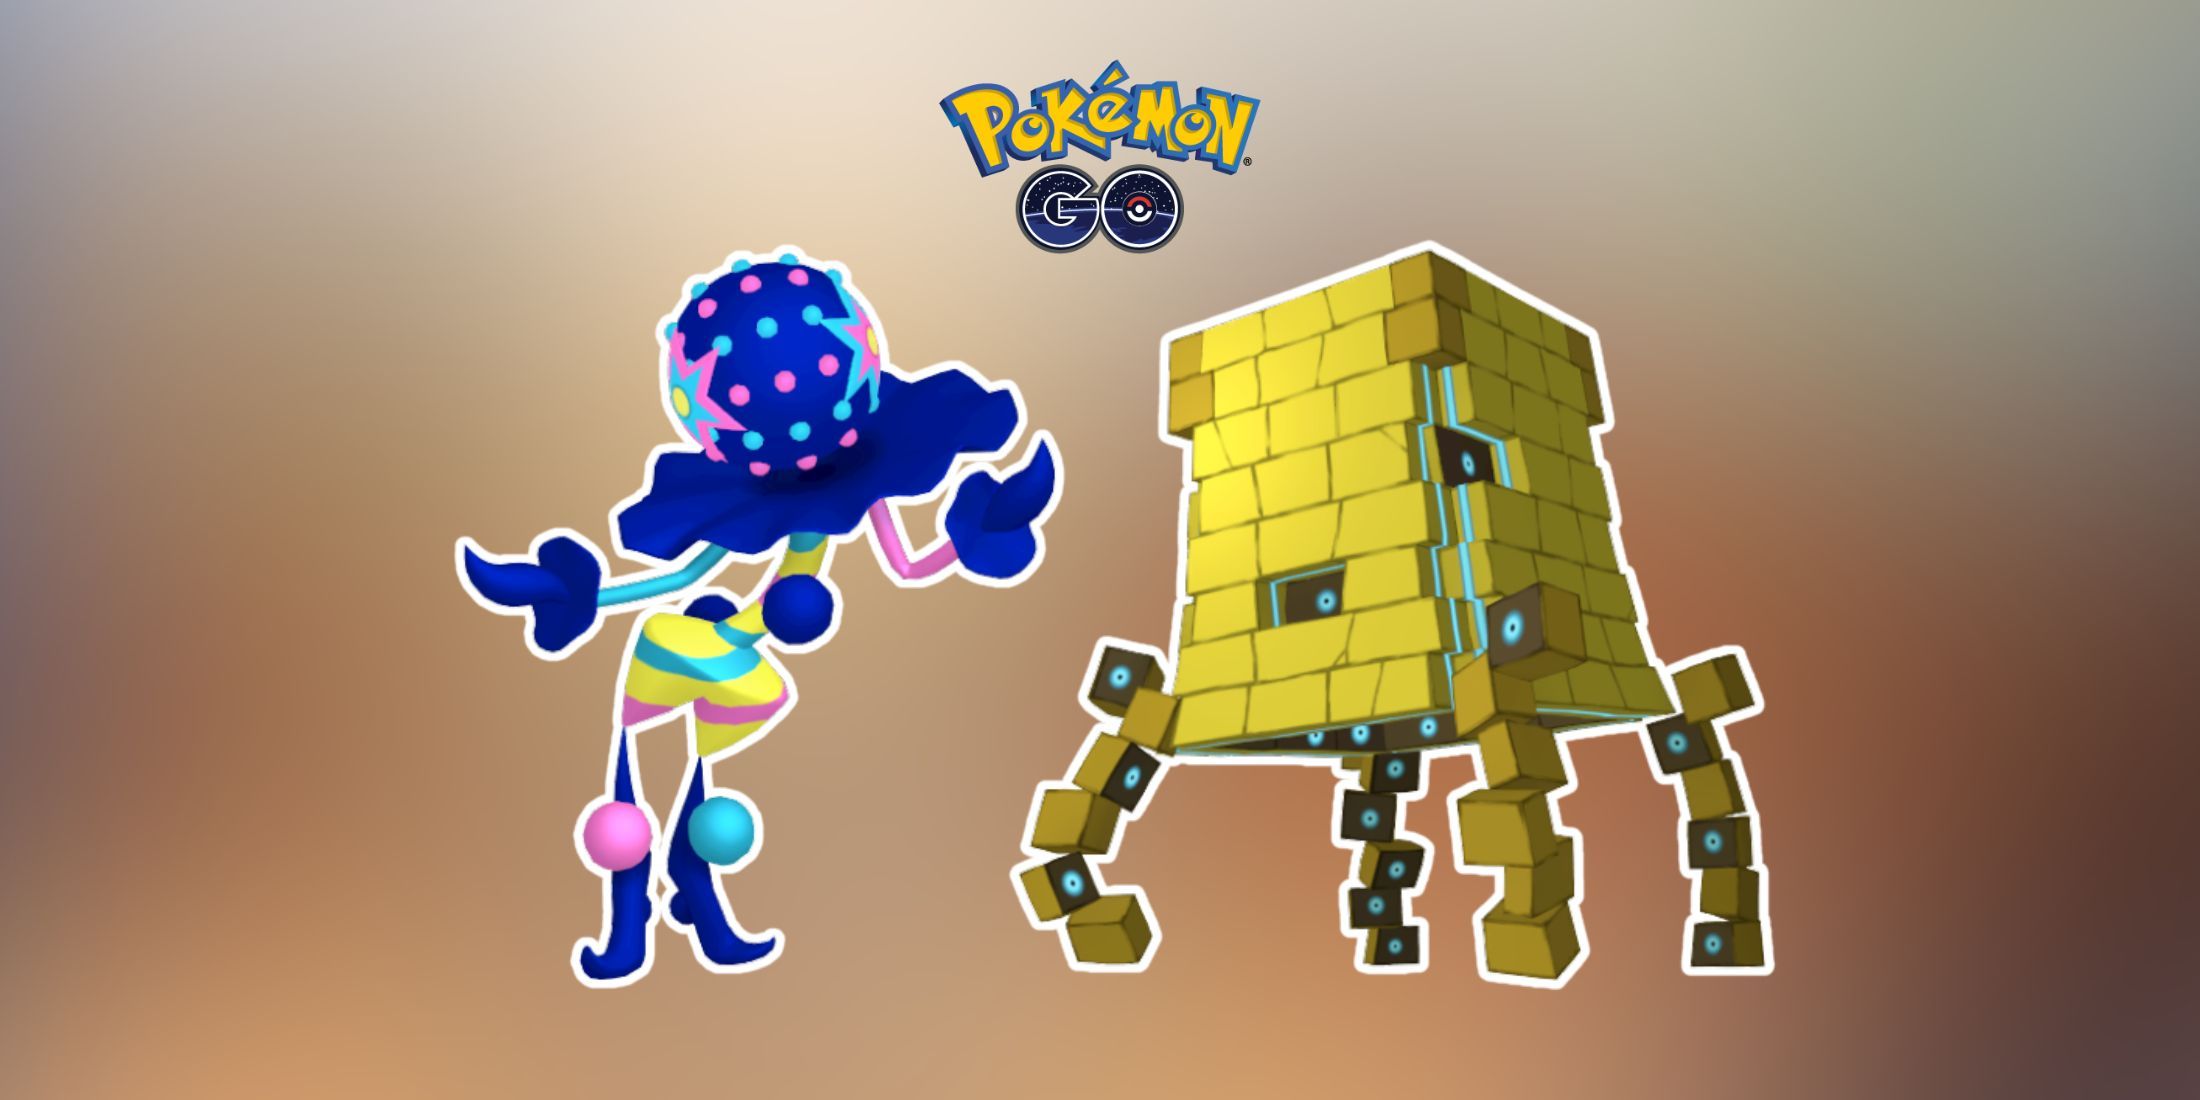 Shiny Blacephalon and Shiny Stakataka in Pokemon GO